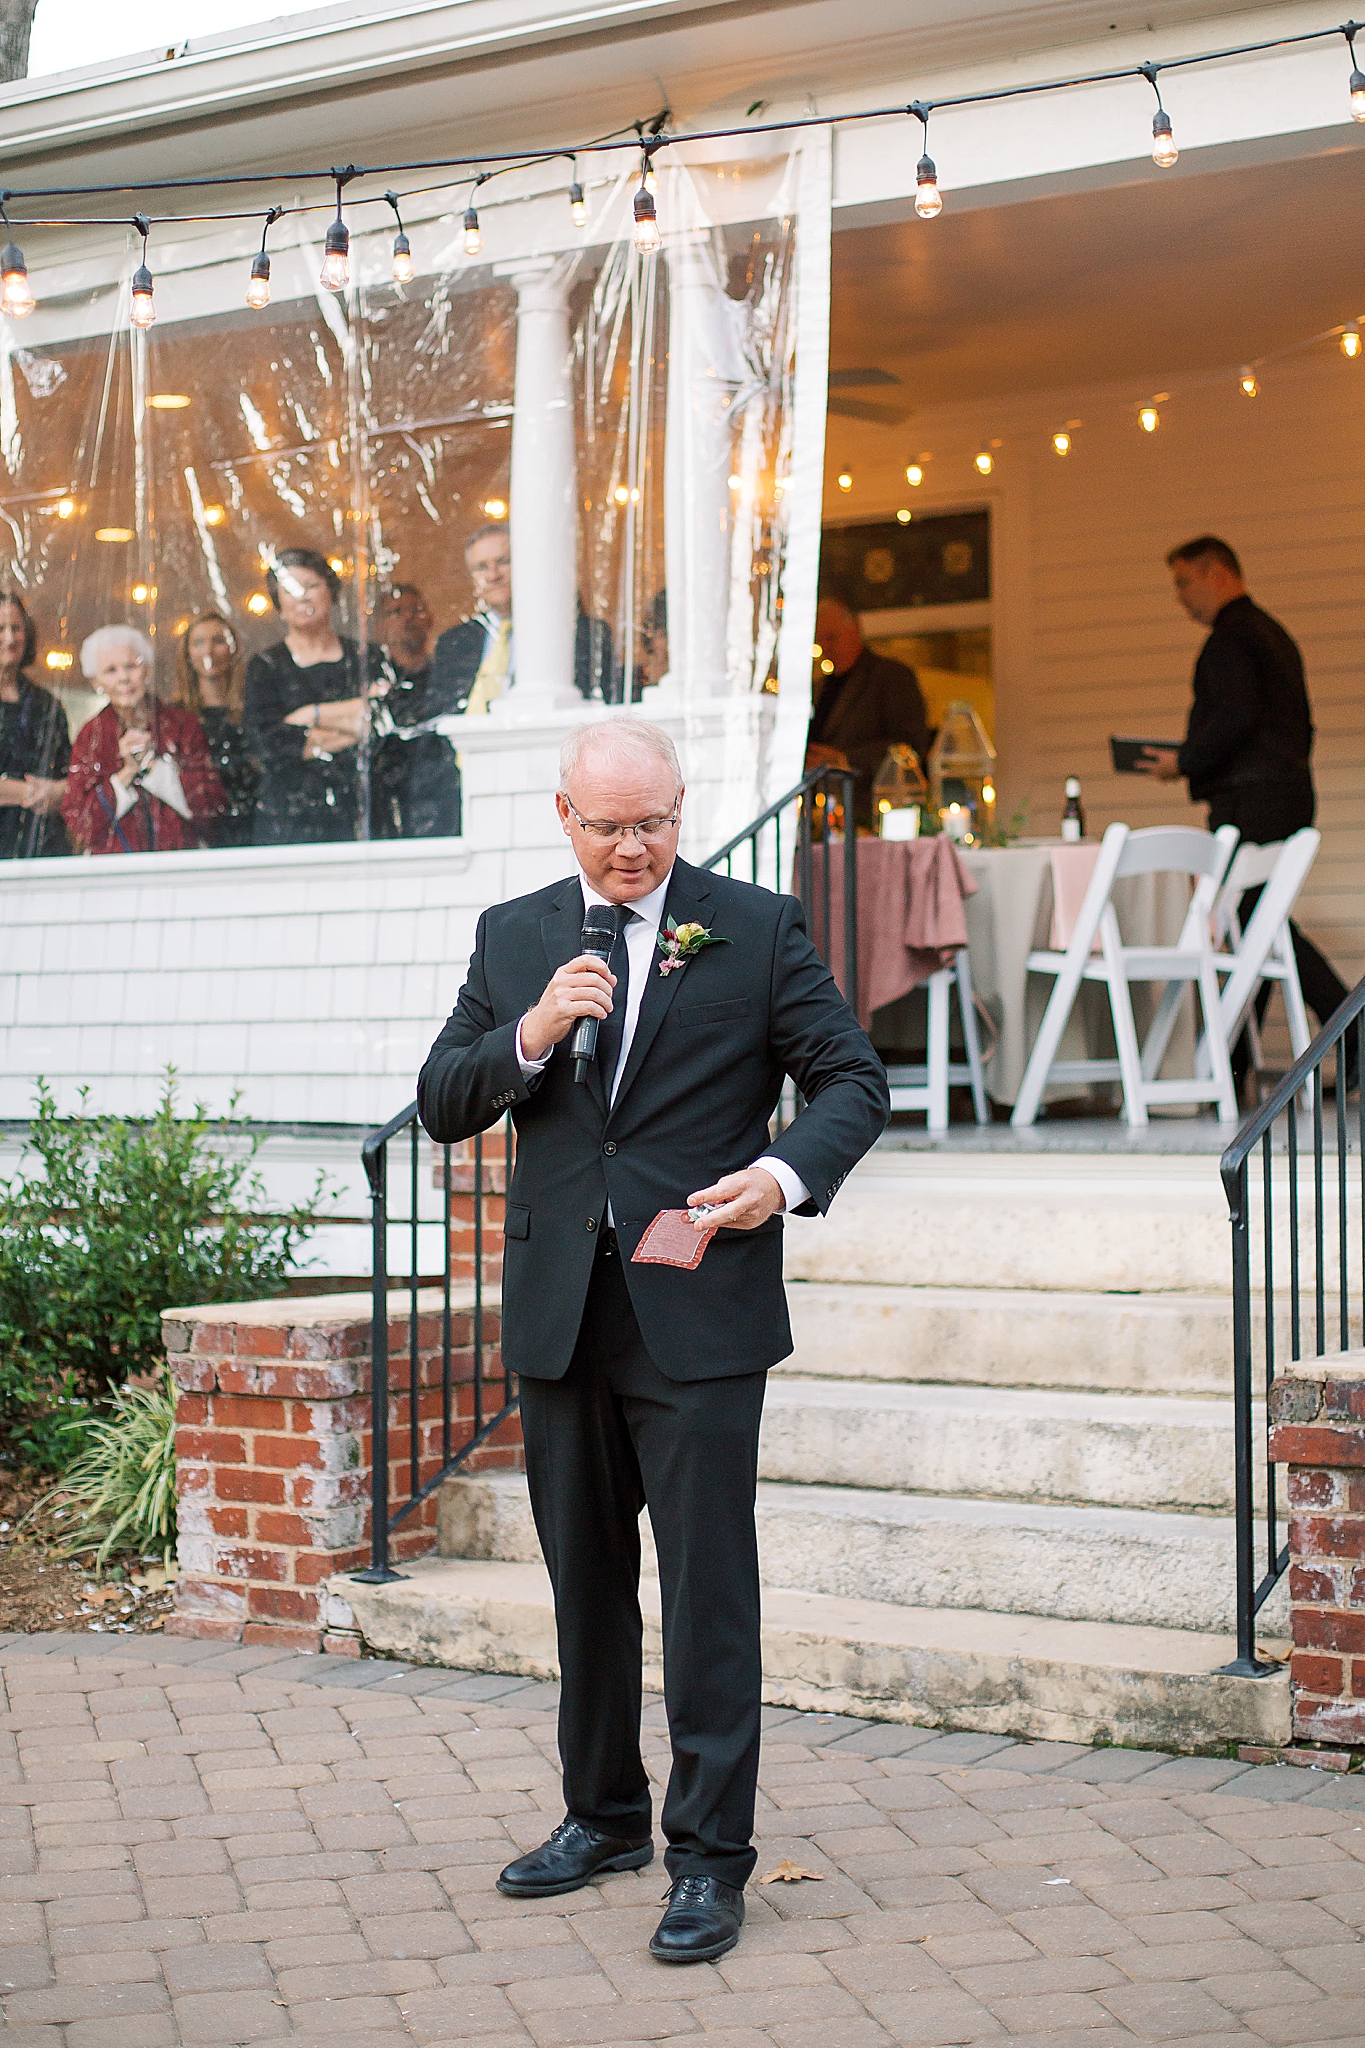 wedding reception on patio in Concord NC